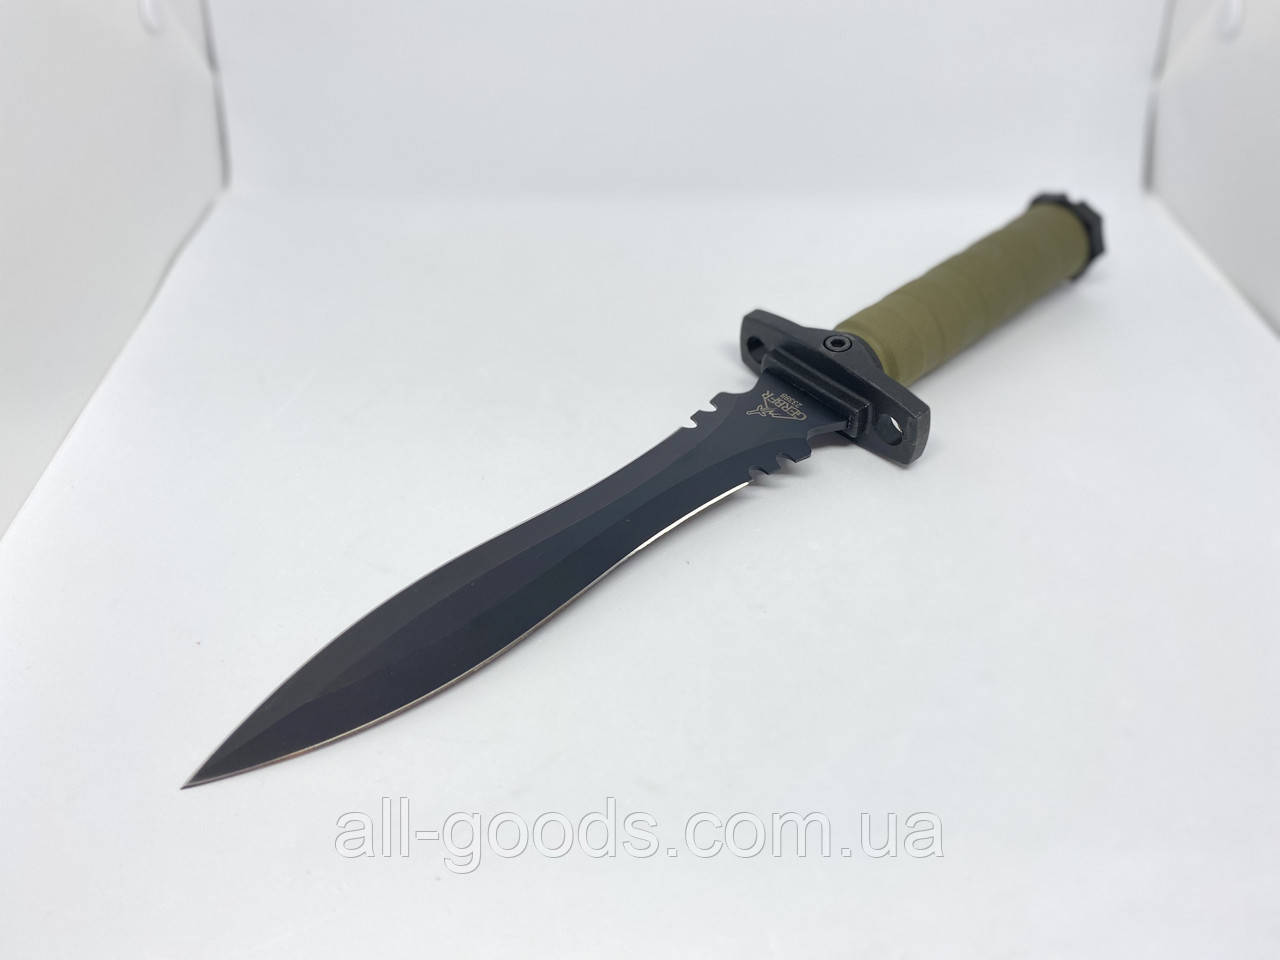 Охотничий большой туристический тактический нож с чехлом GERBFR 2338В (35см). Двухсторонний нож рыбацкий All